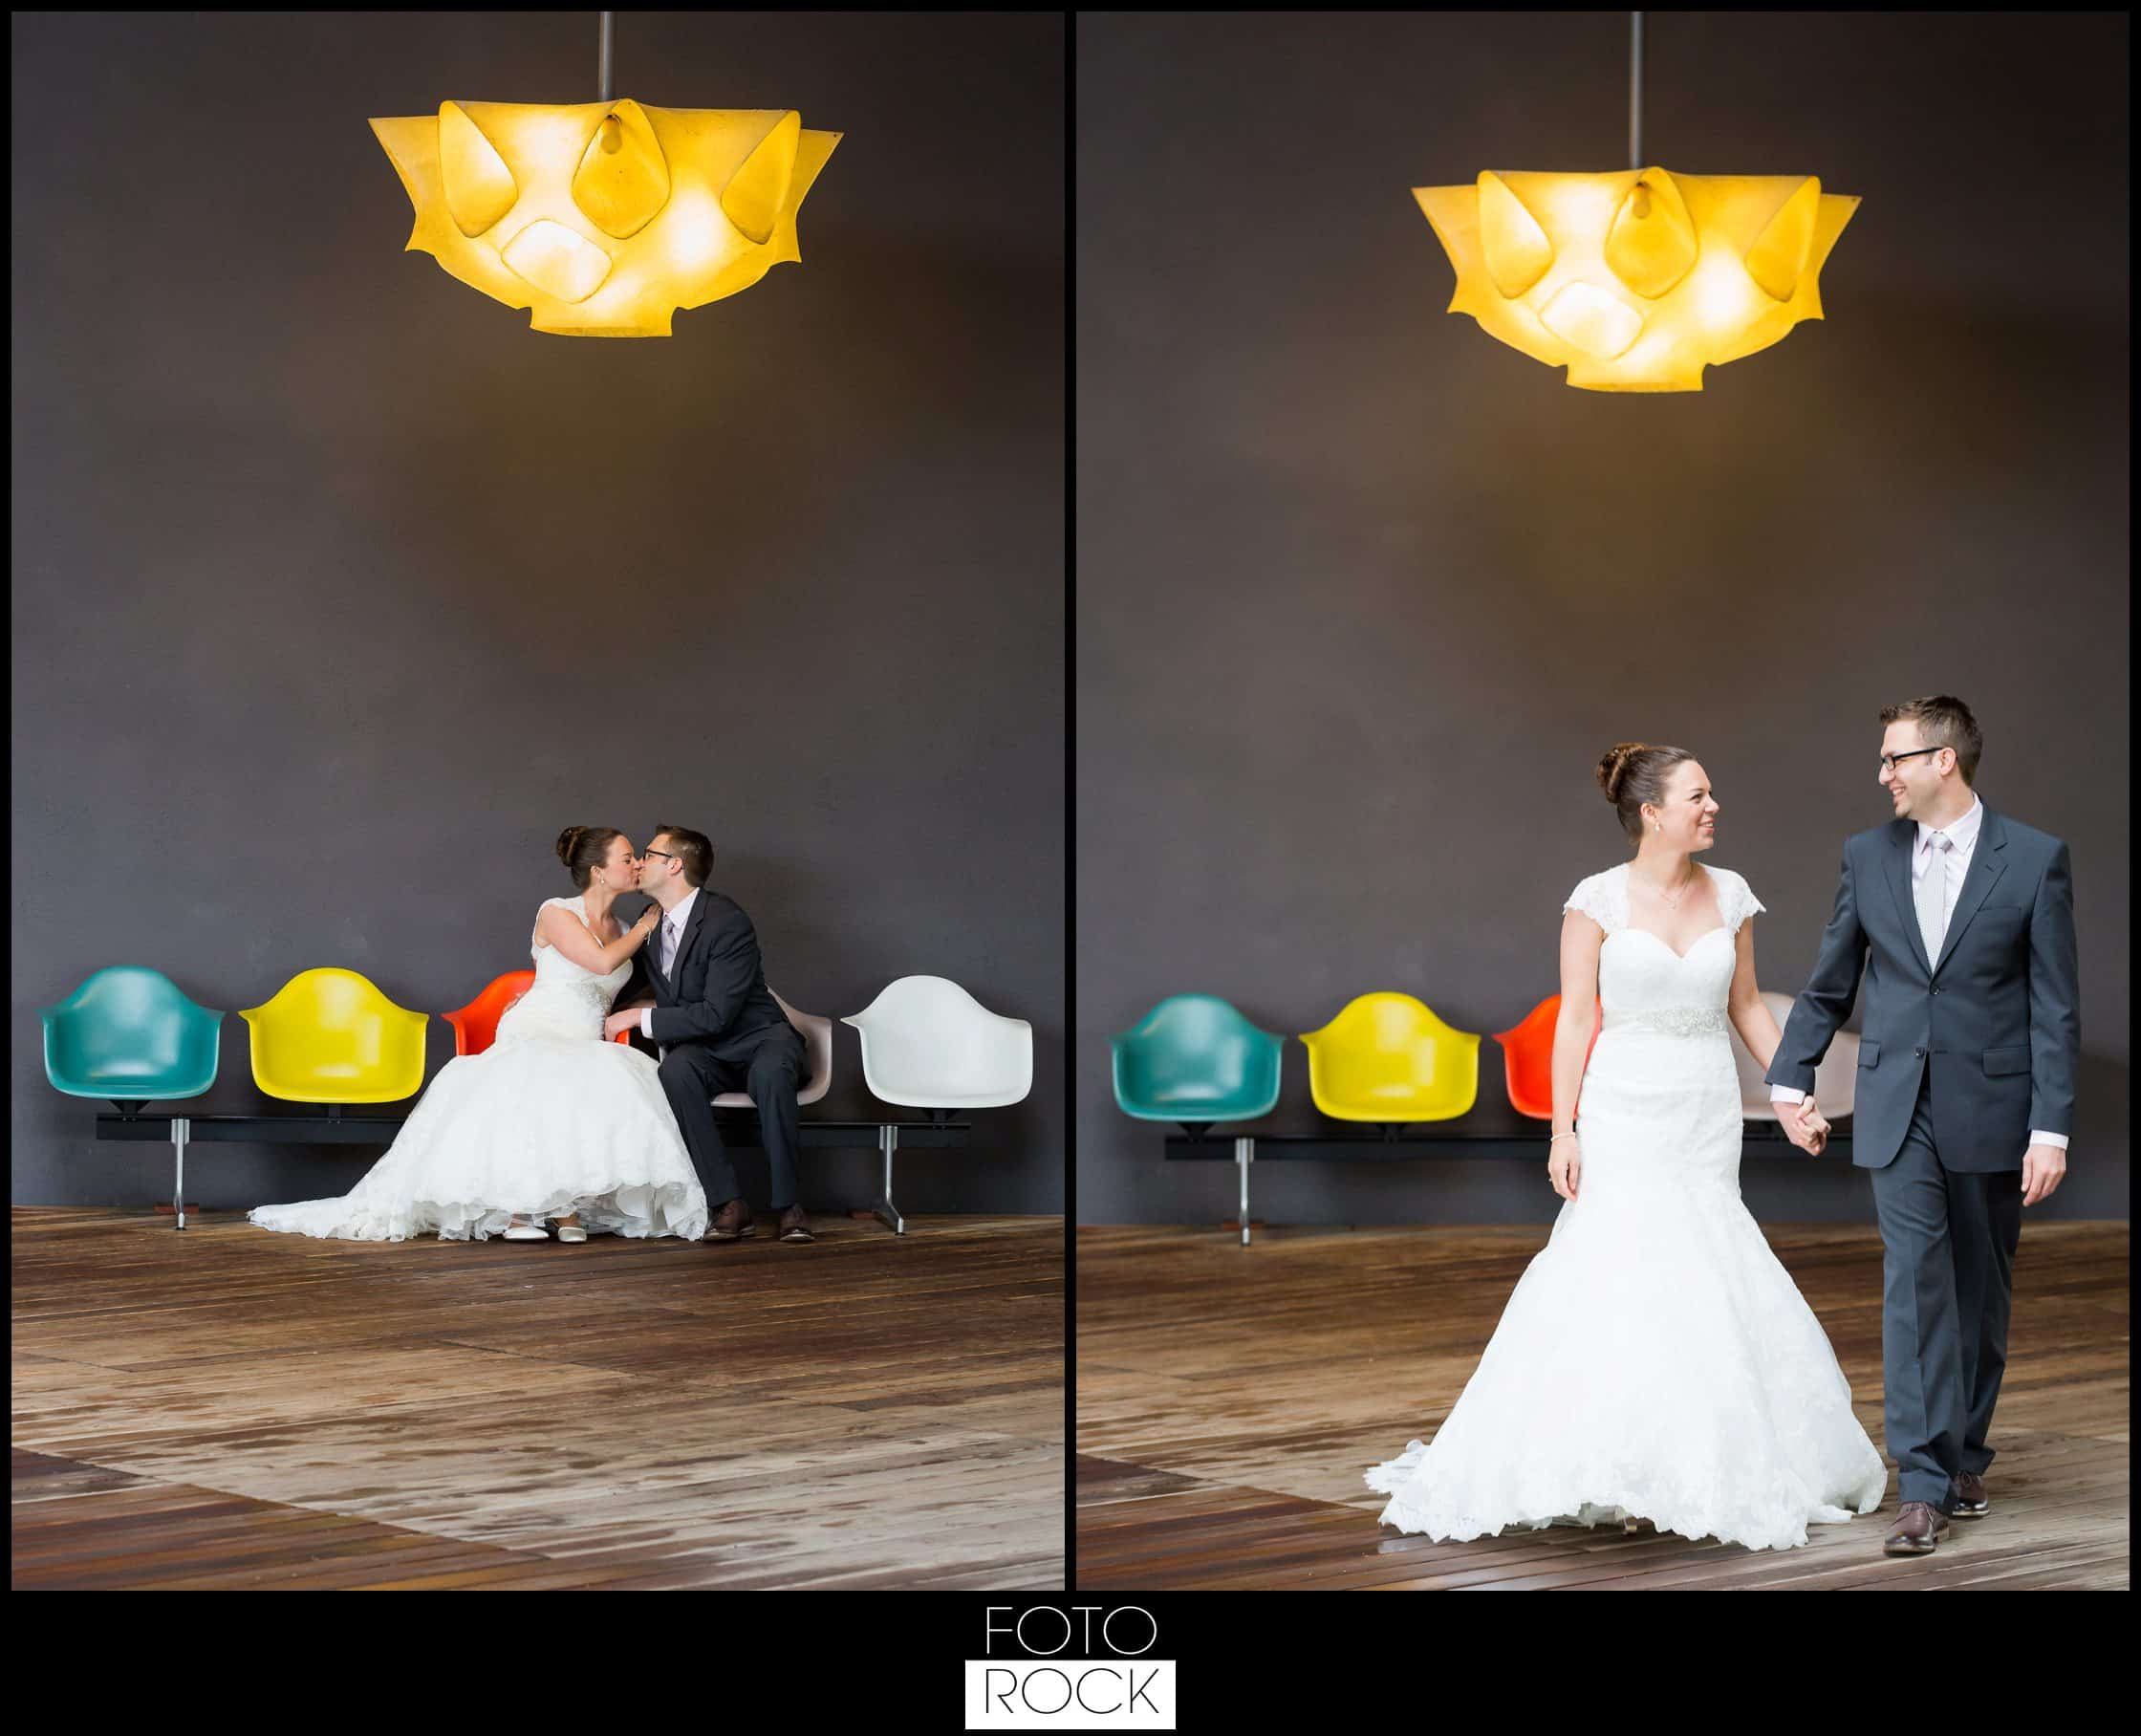 Hochzeit Vitra Design Museum Weil am Rhein Brautpaar Kuss Lampe Stühle Farben